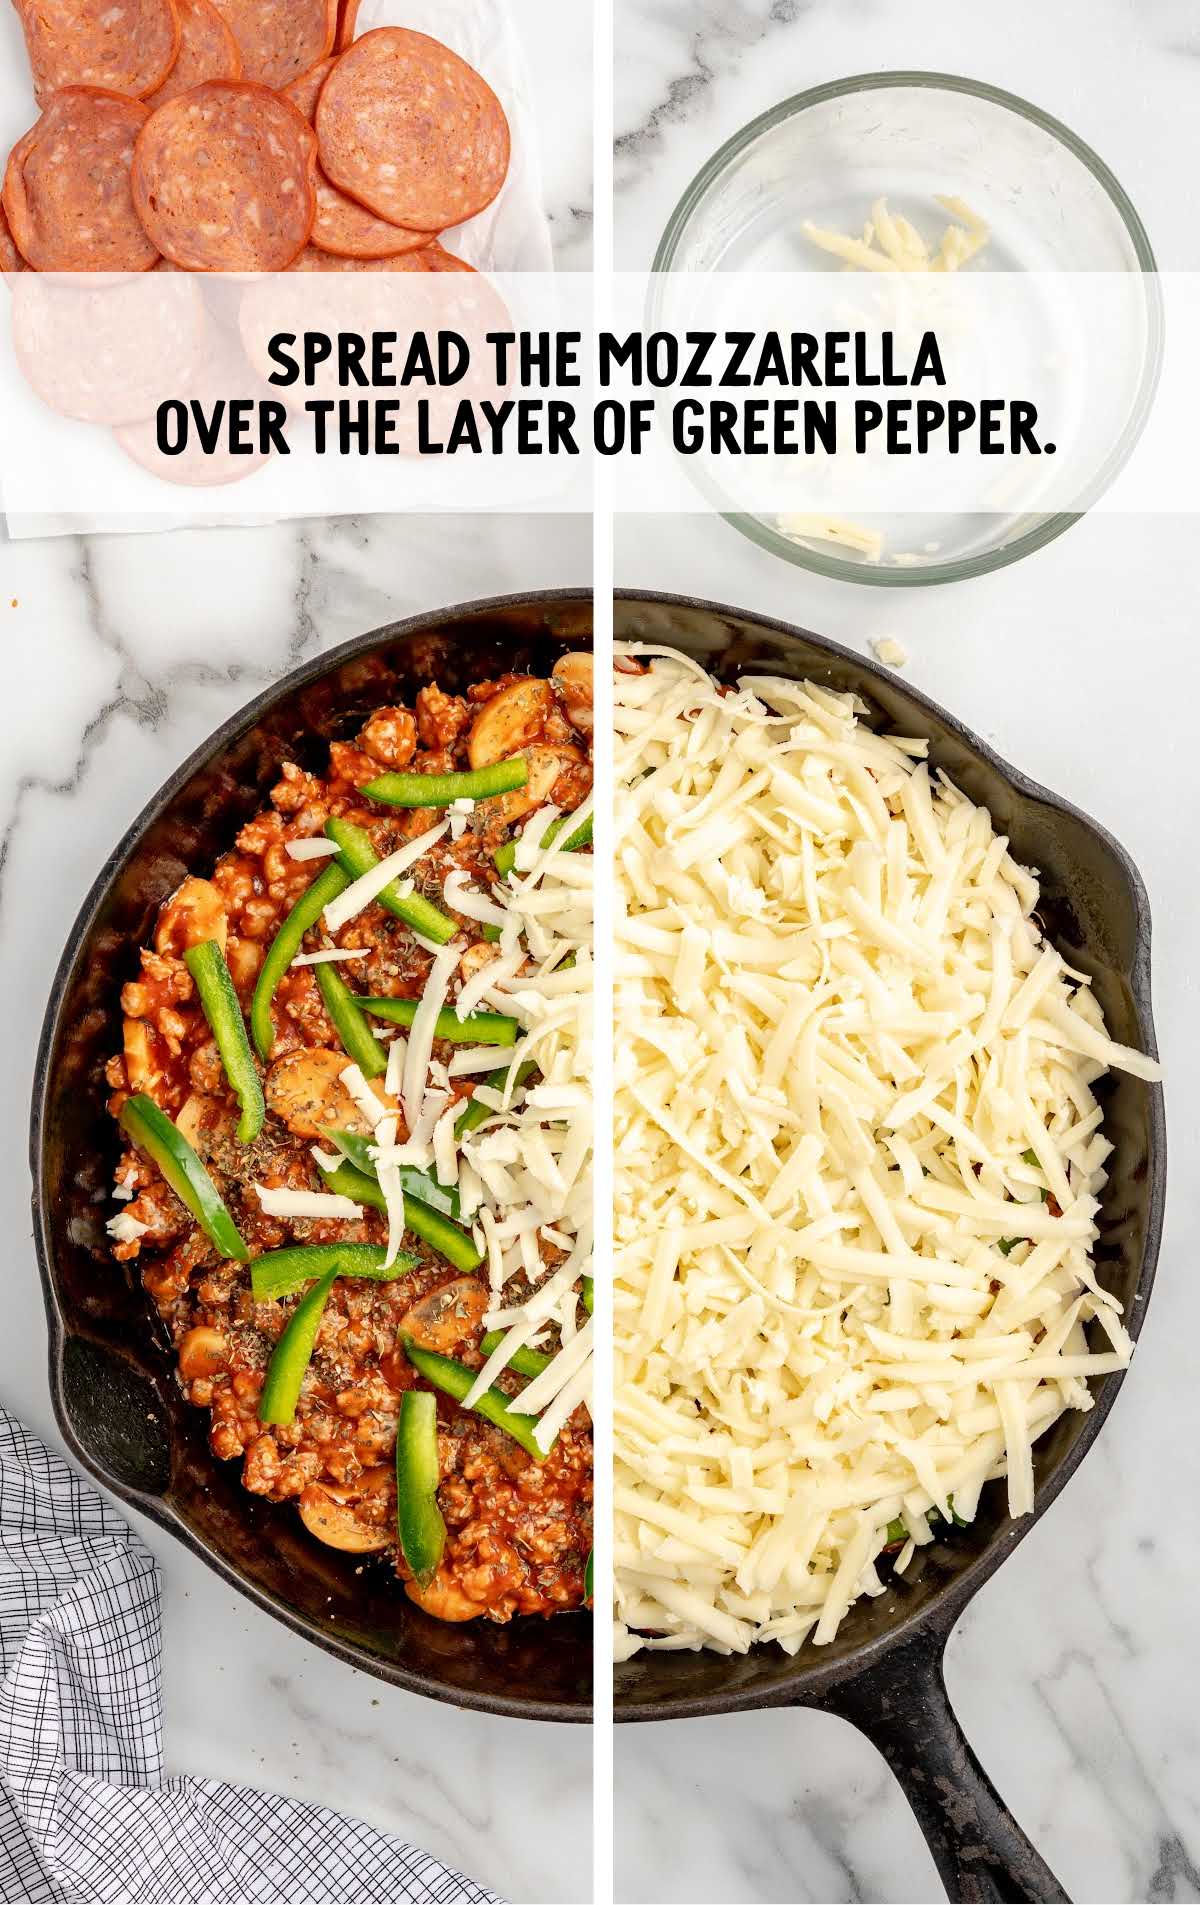 mozzarella spread over the layer of green pepper in a skillet